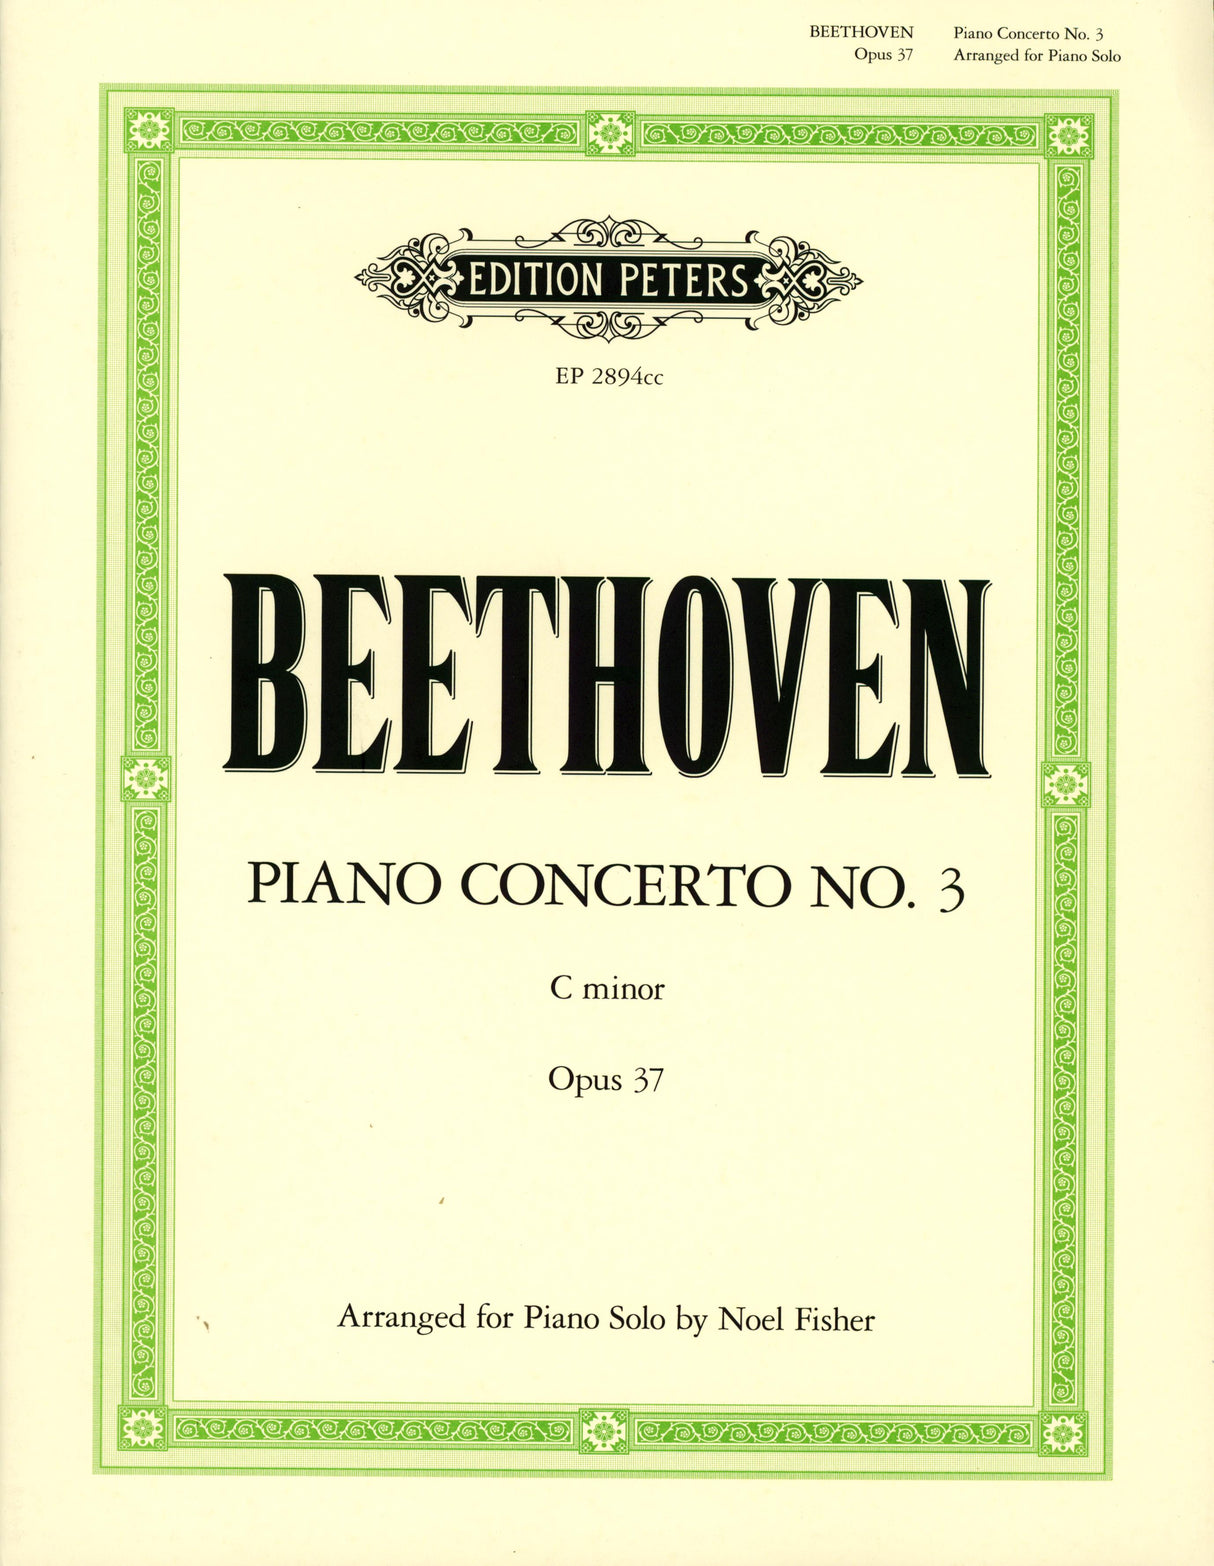 Beethoven: Piano Concerto No. 3 in C Minor, Op. 37 - arranged & abridged